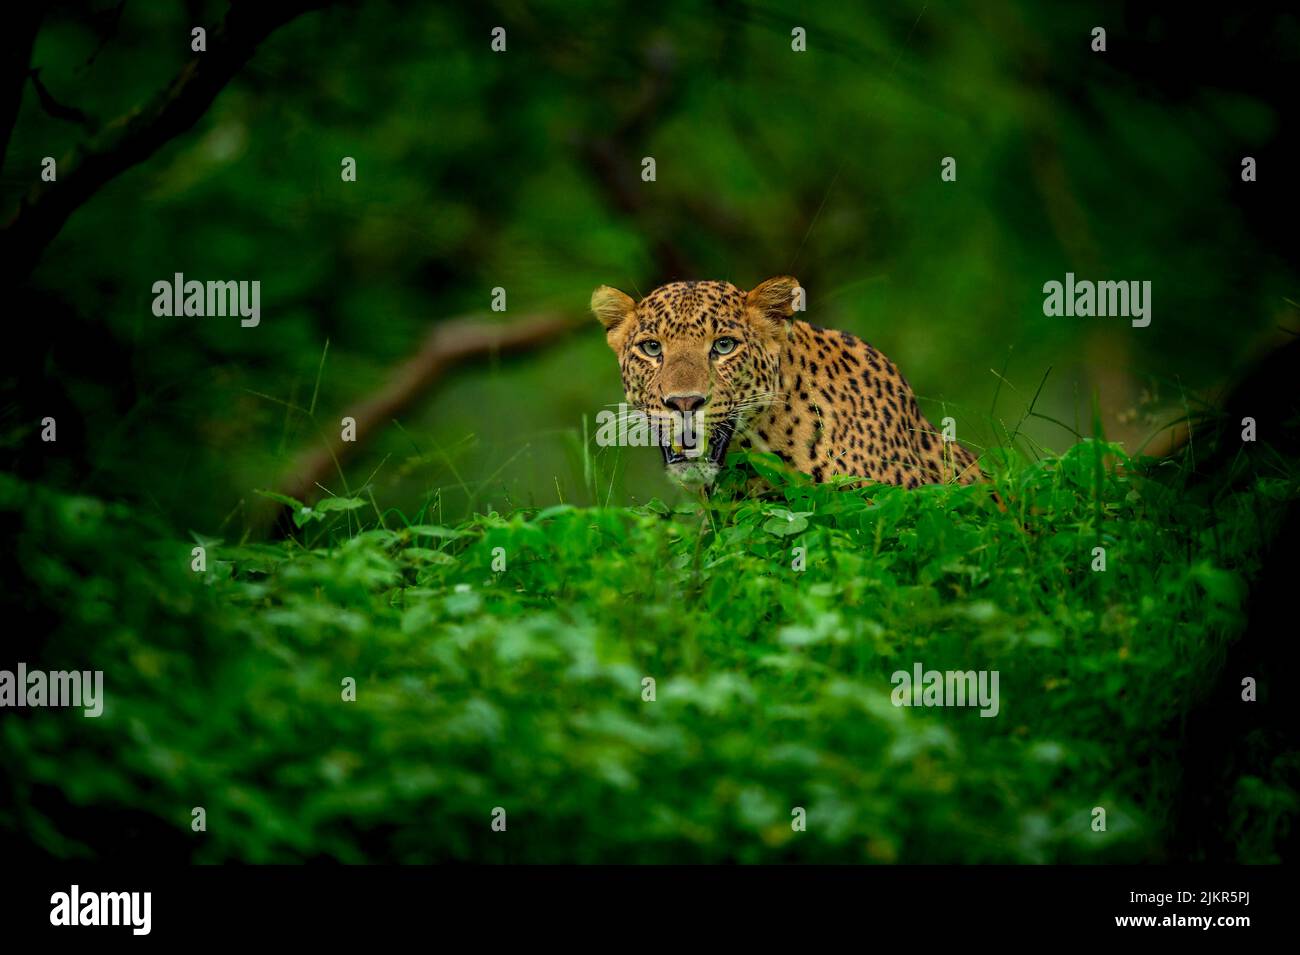 leopardo selvatico indiano maschio o pantera faccia primo piano o ritratto in verde monsone naturale durante il safari all'aperto nella giungla nella foresta dell'india centrale asia Foto Stock